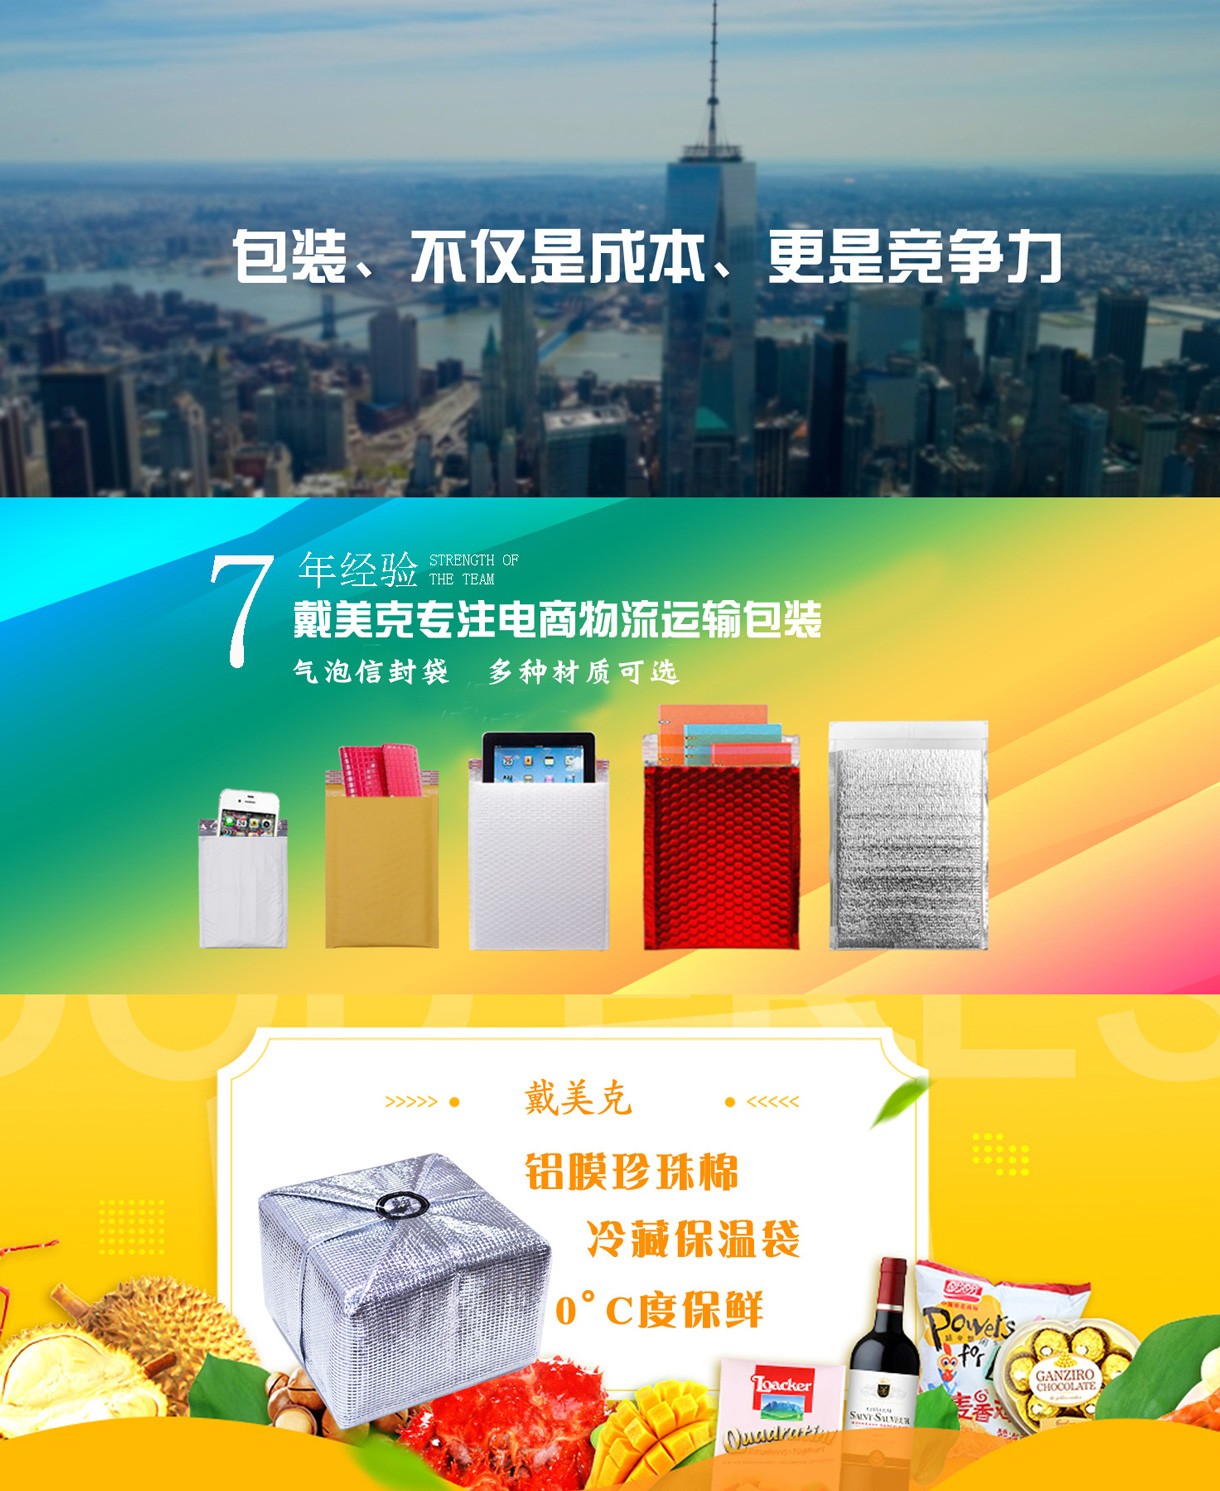 浙江戴美克包装制品有限公司-中国国际包装展-中国包装容器展